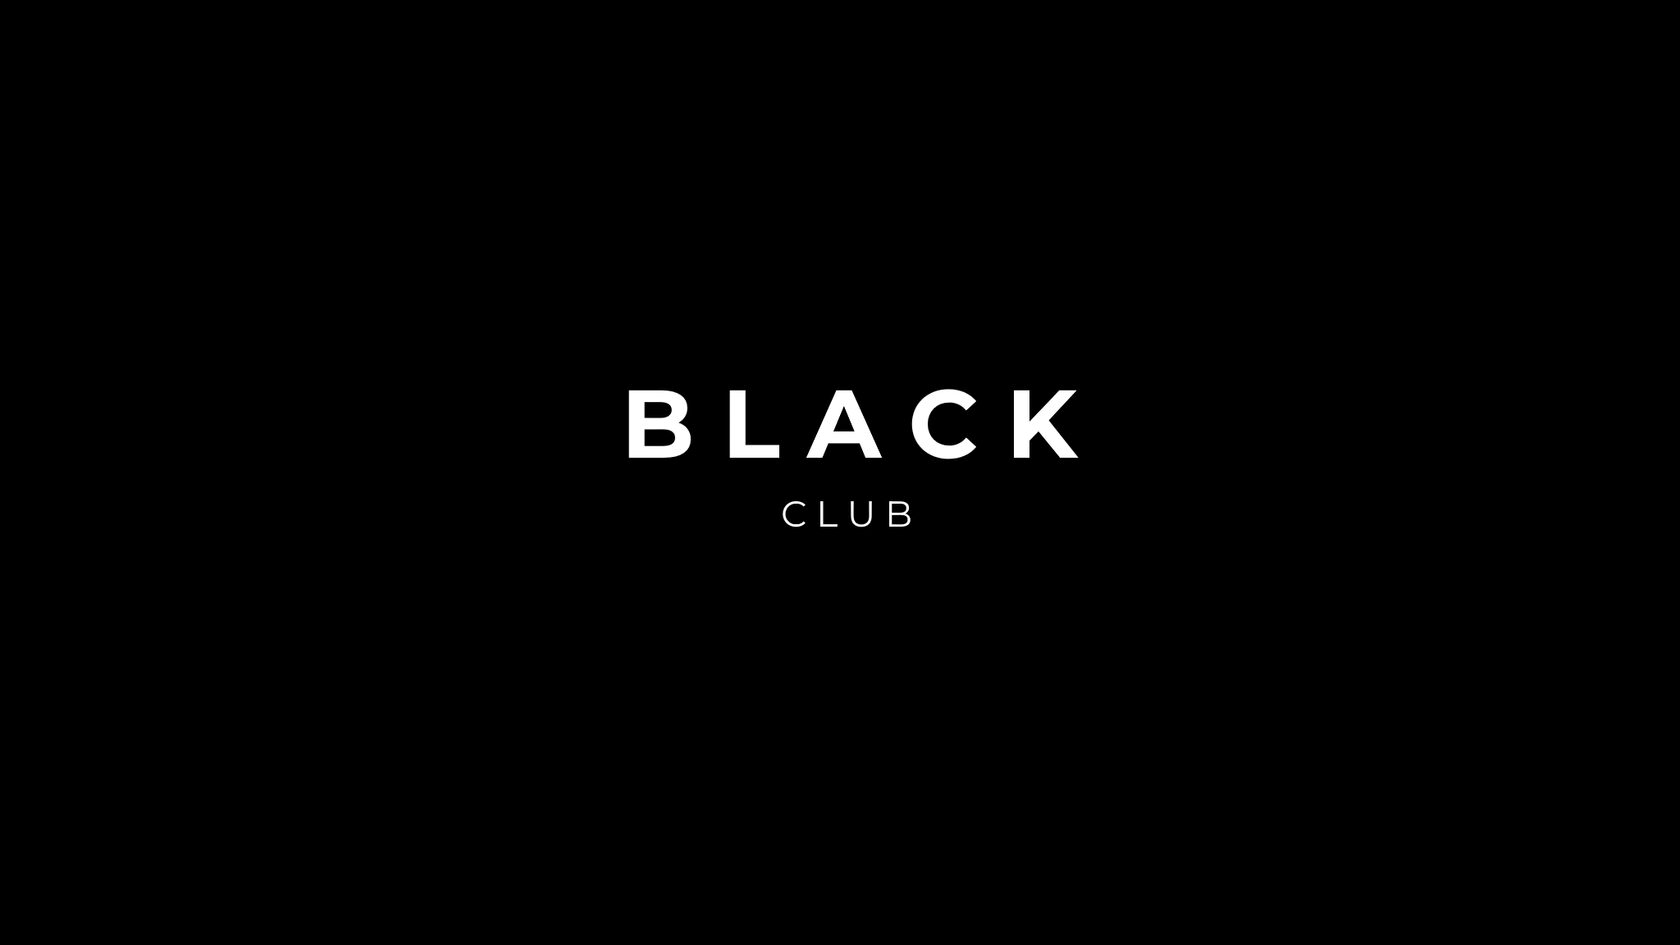 BLACK CLUB